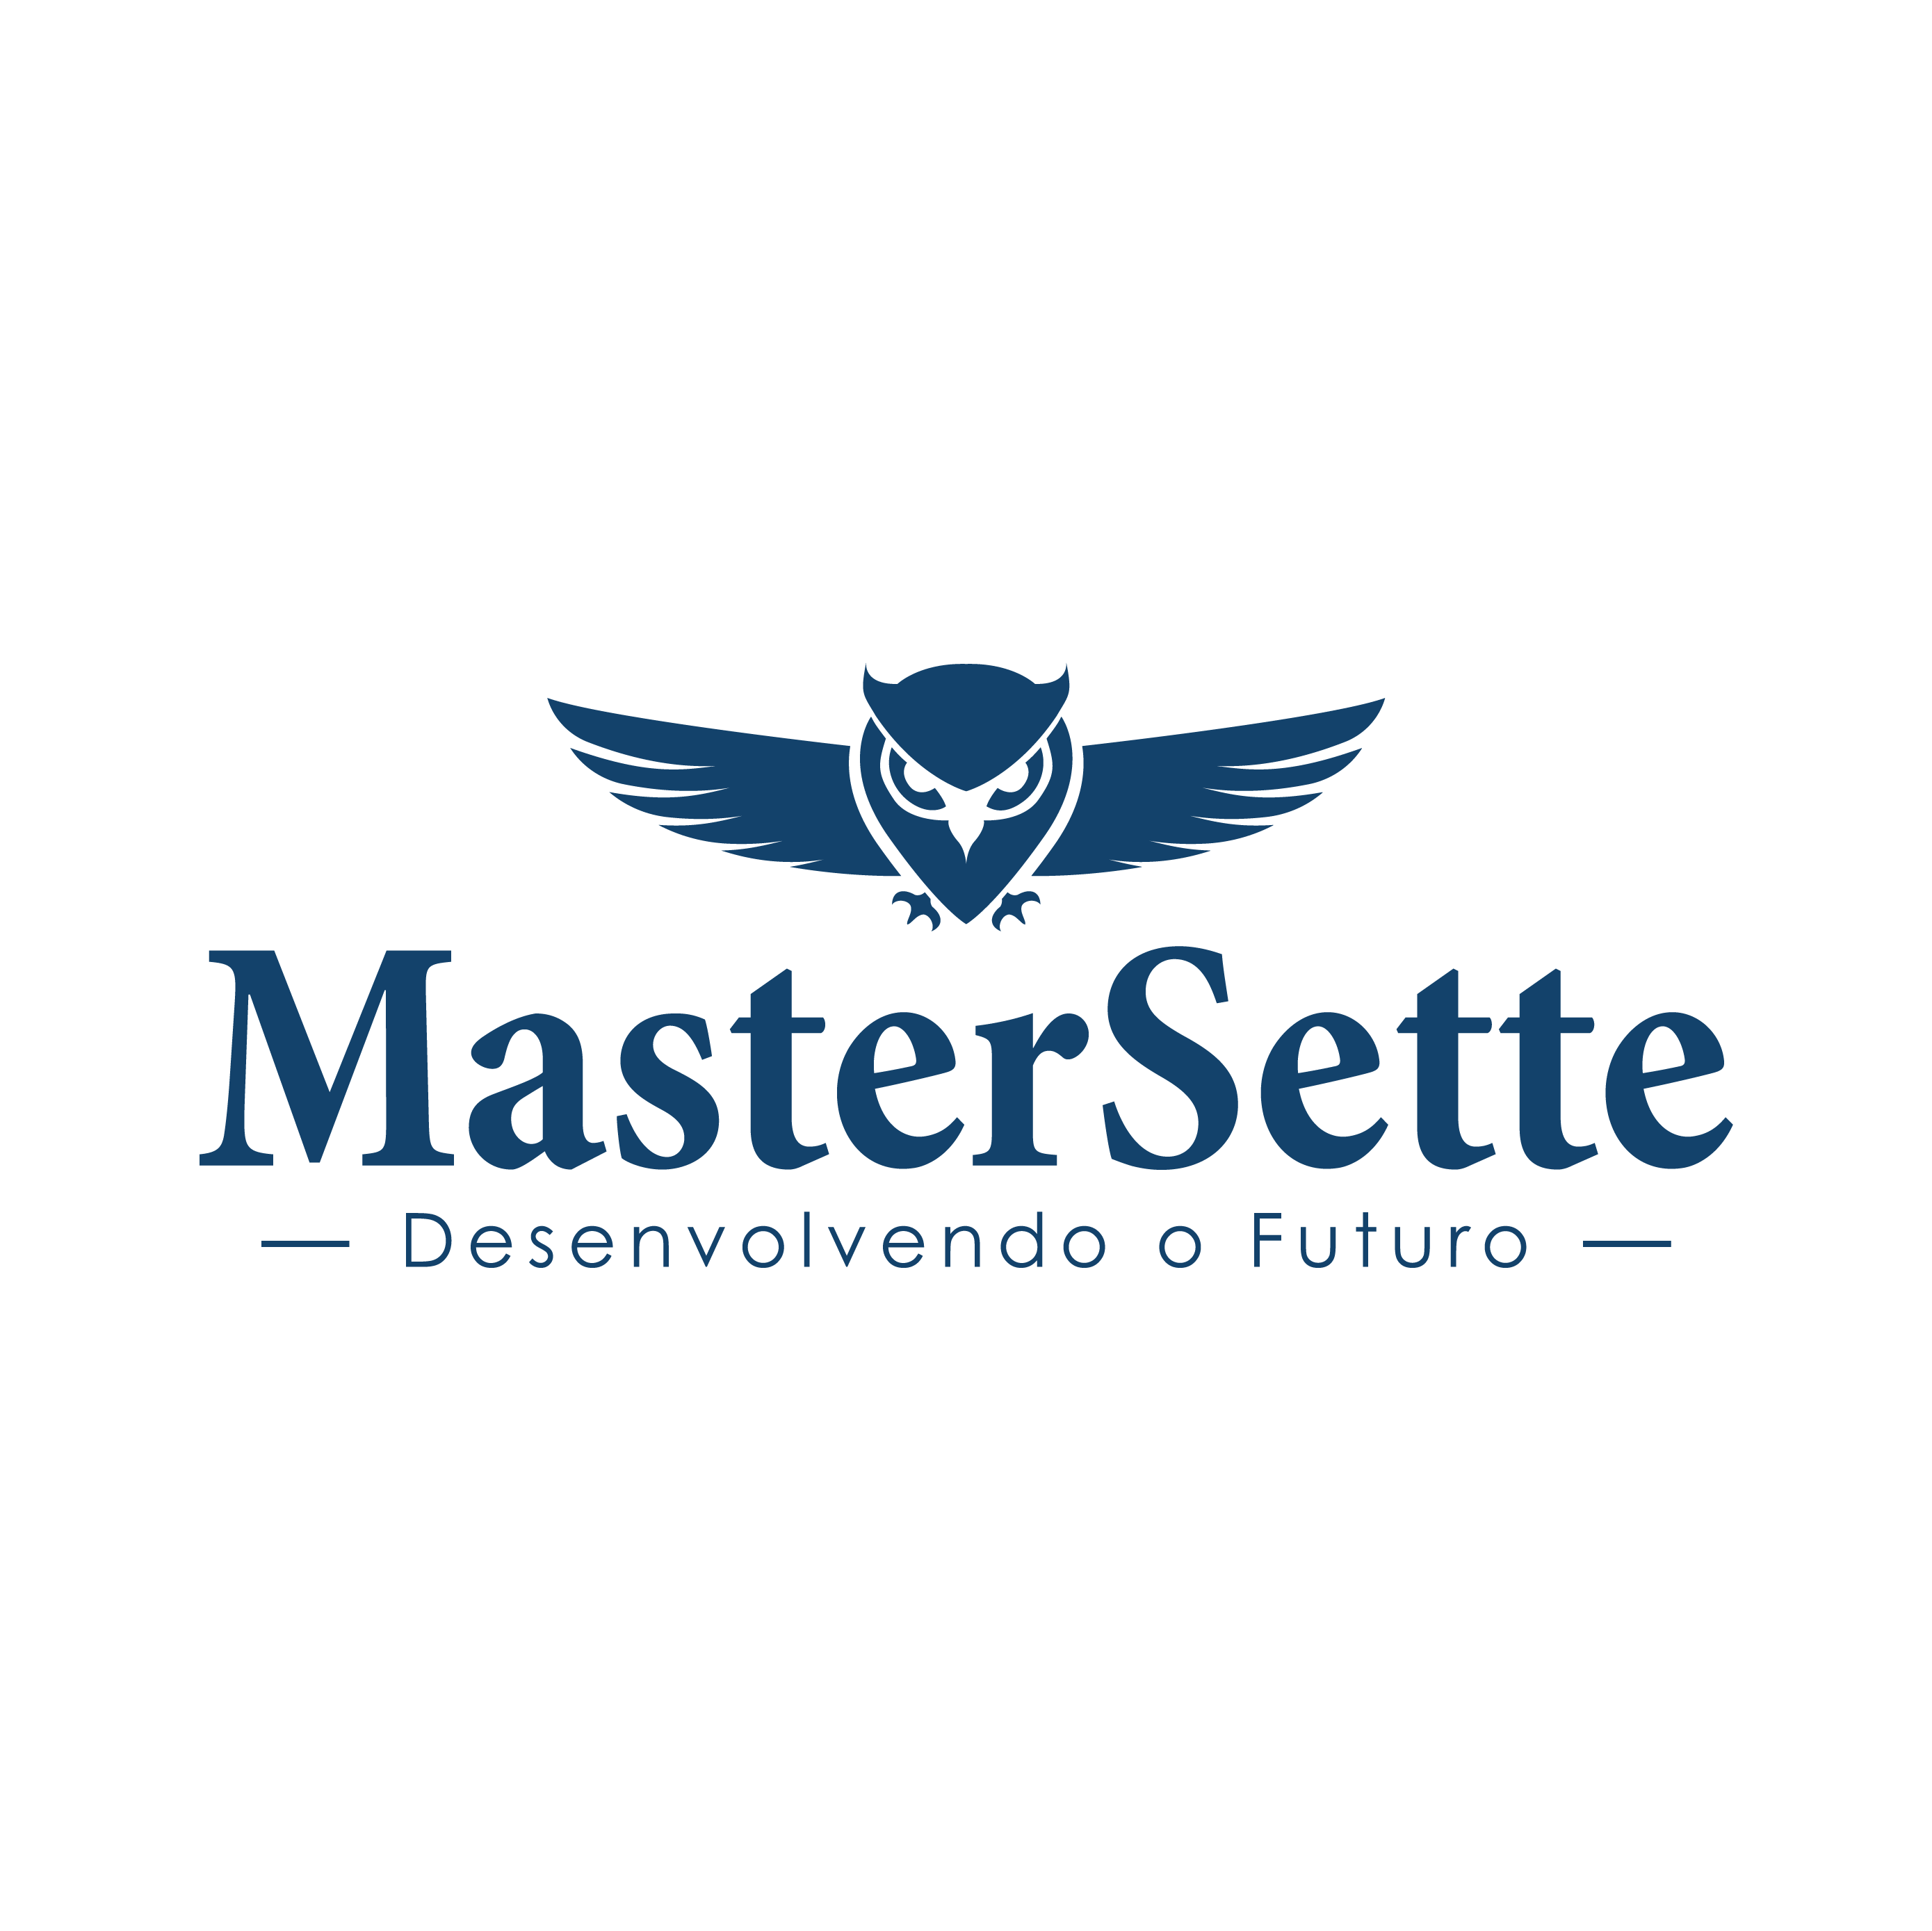 Master Sette